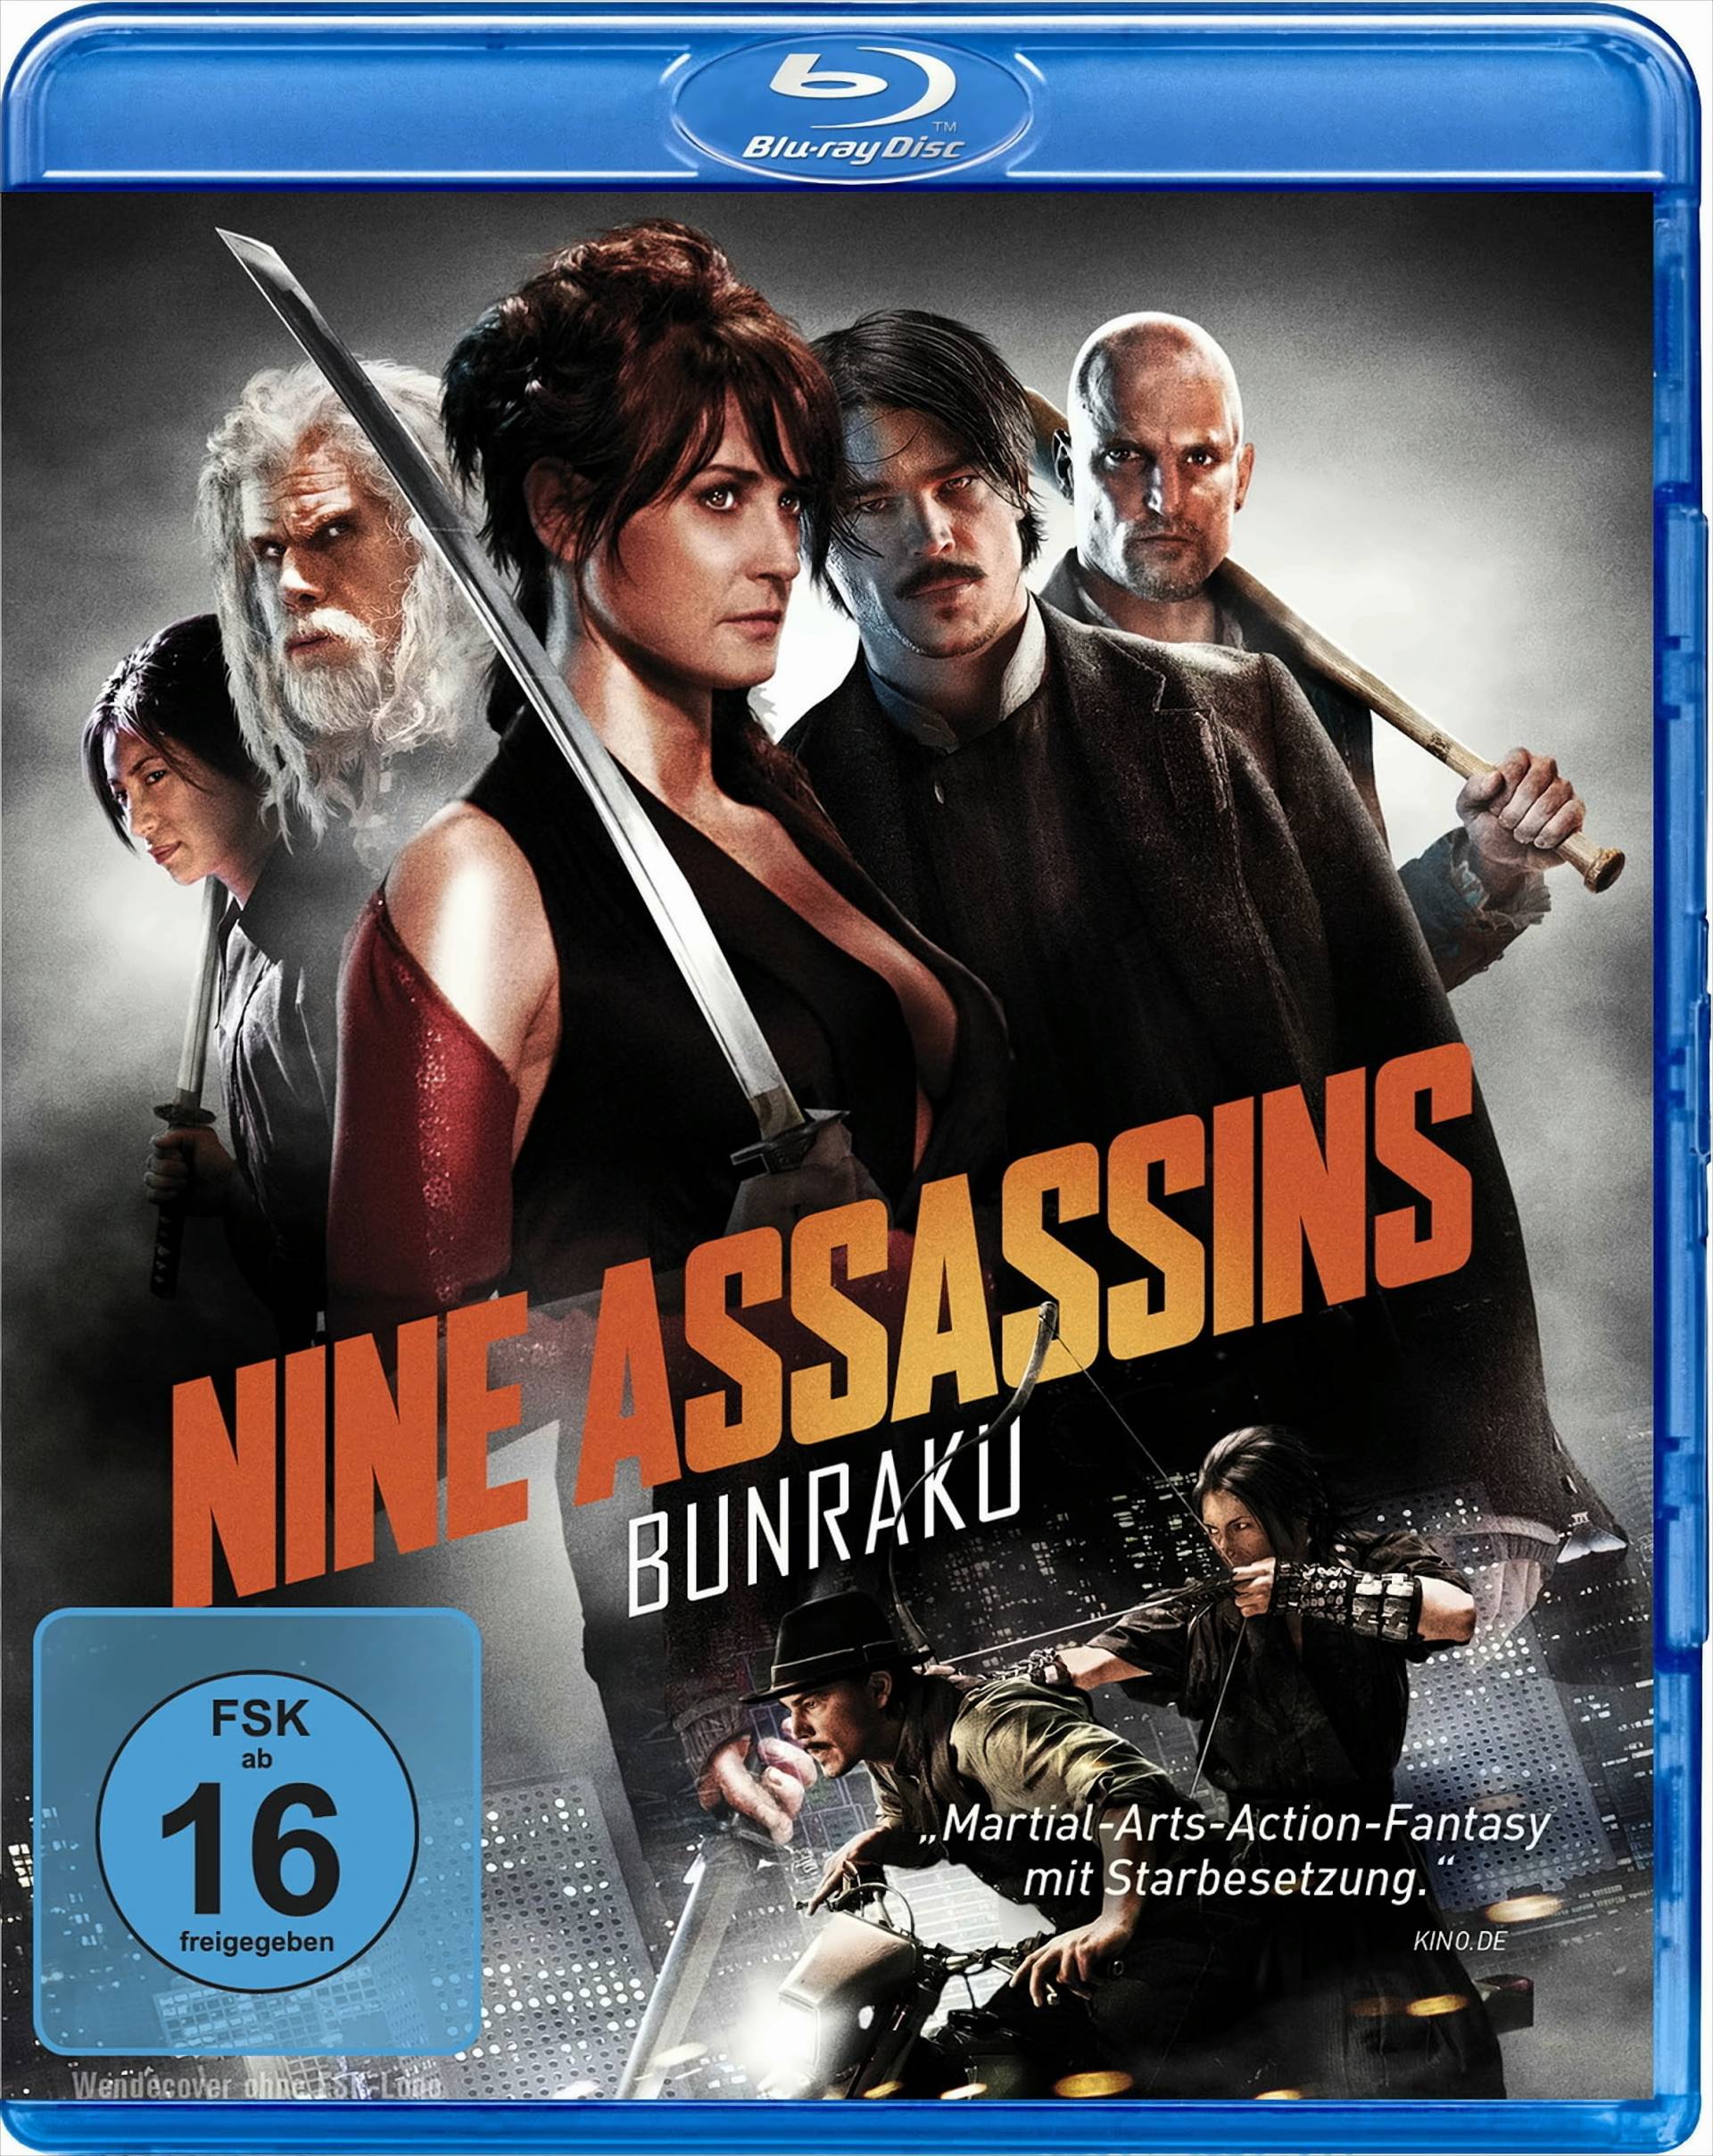 Nine Assassins - Bunraku von WVG Medien